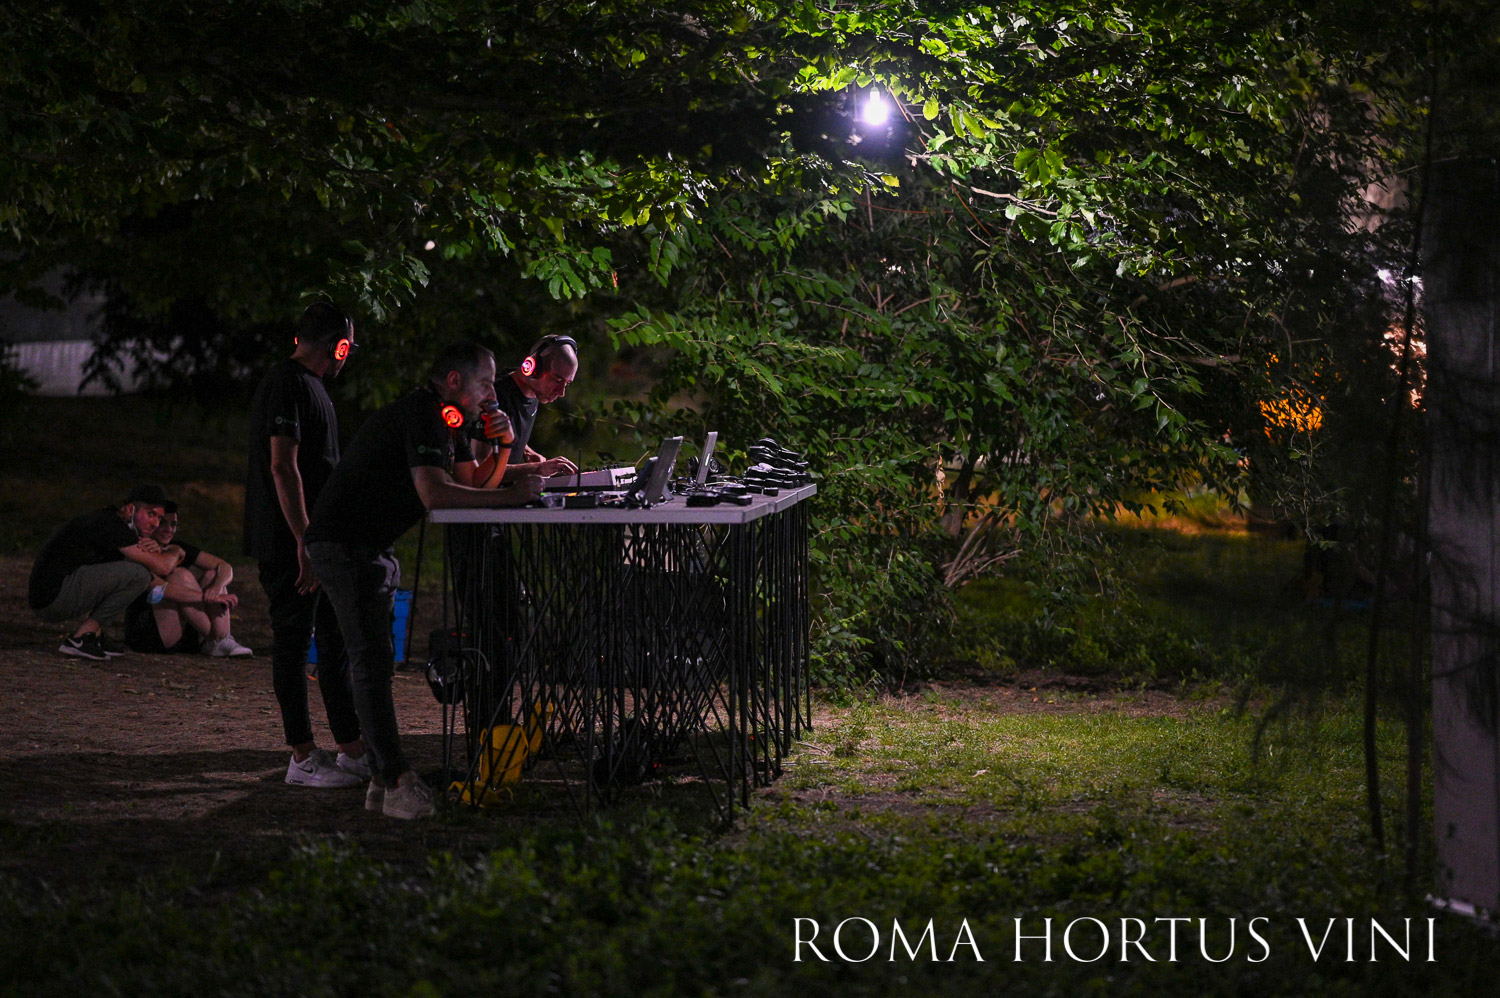 Roma-Hortus-Vini-2021 dj set